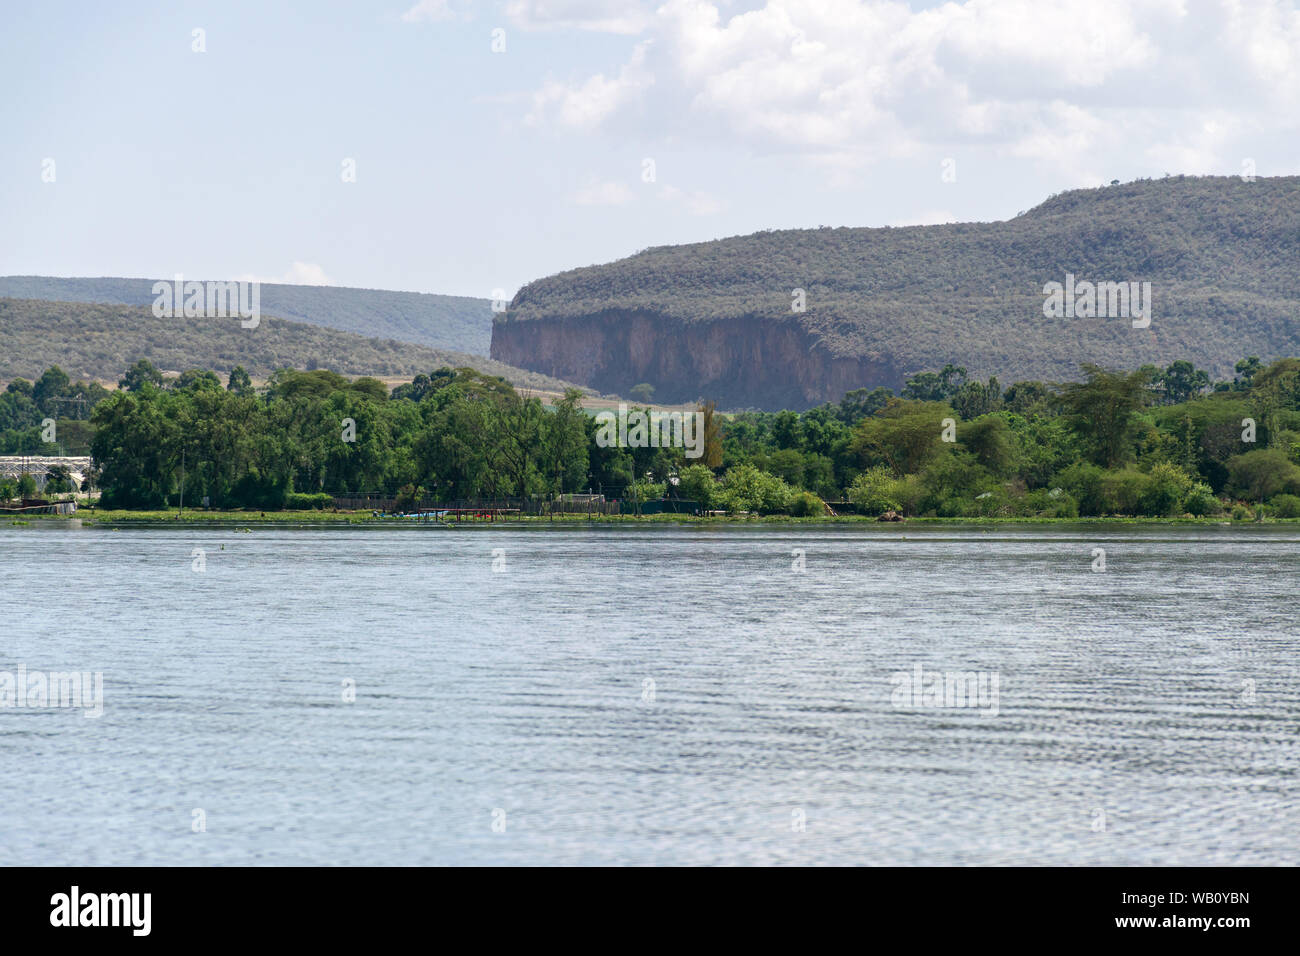 Rivage du lac Naivasha avec Hell's Gate National Park des collines en arrière-plan, au Kenya Banque D'Images